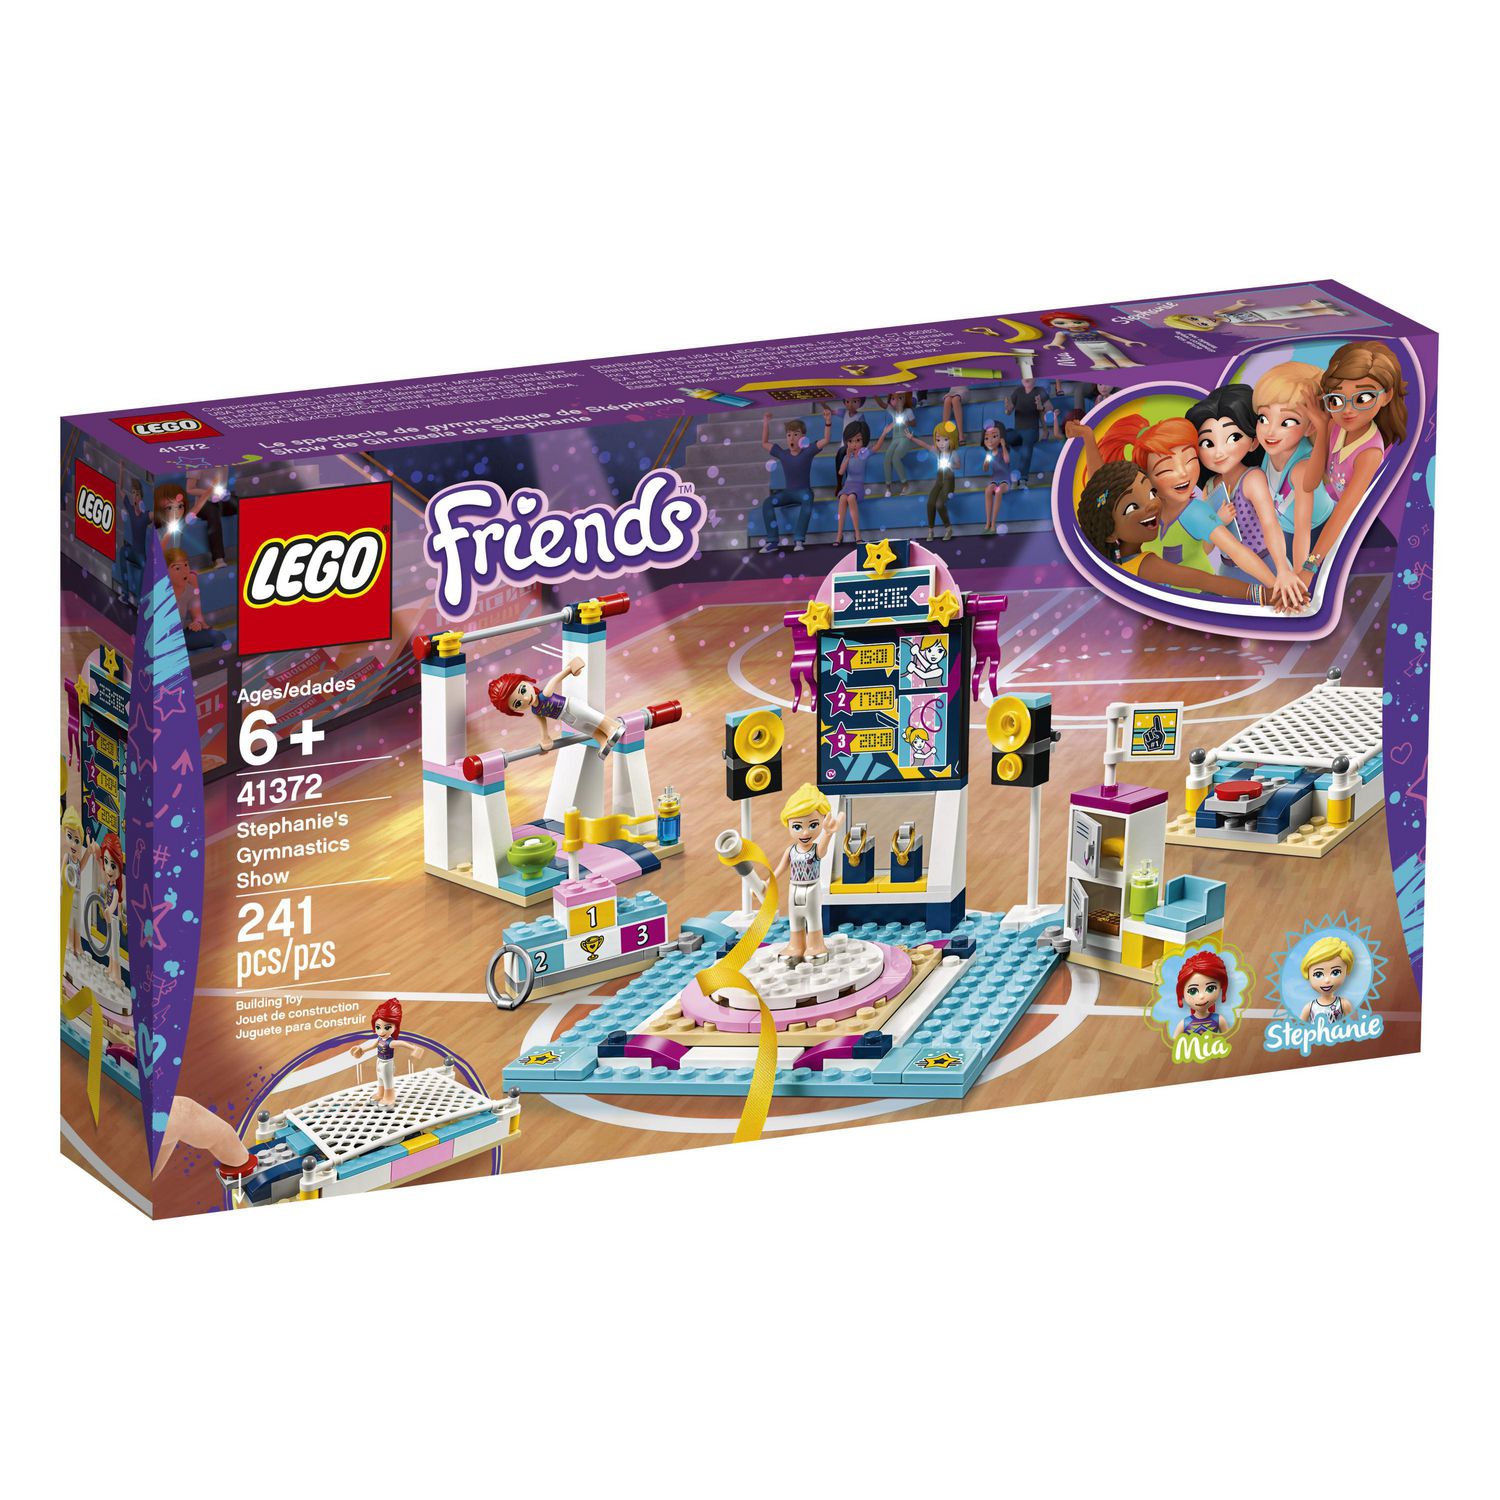 LEGO Friends Stephanie's Gymnastics Show 41372 Toy Building Kit